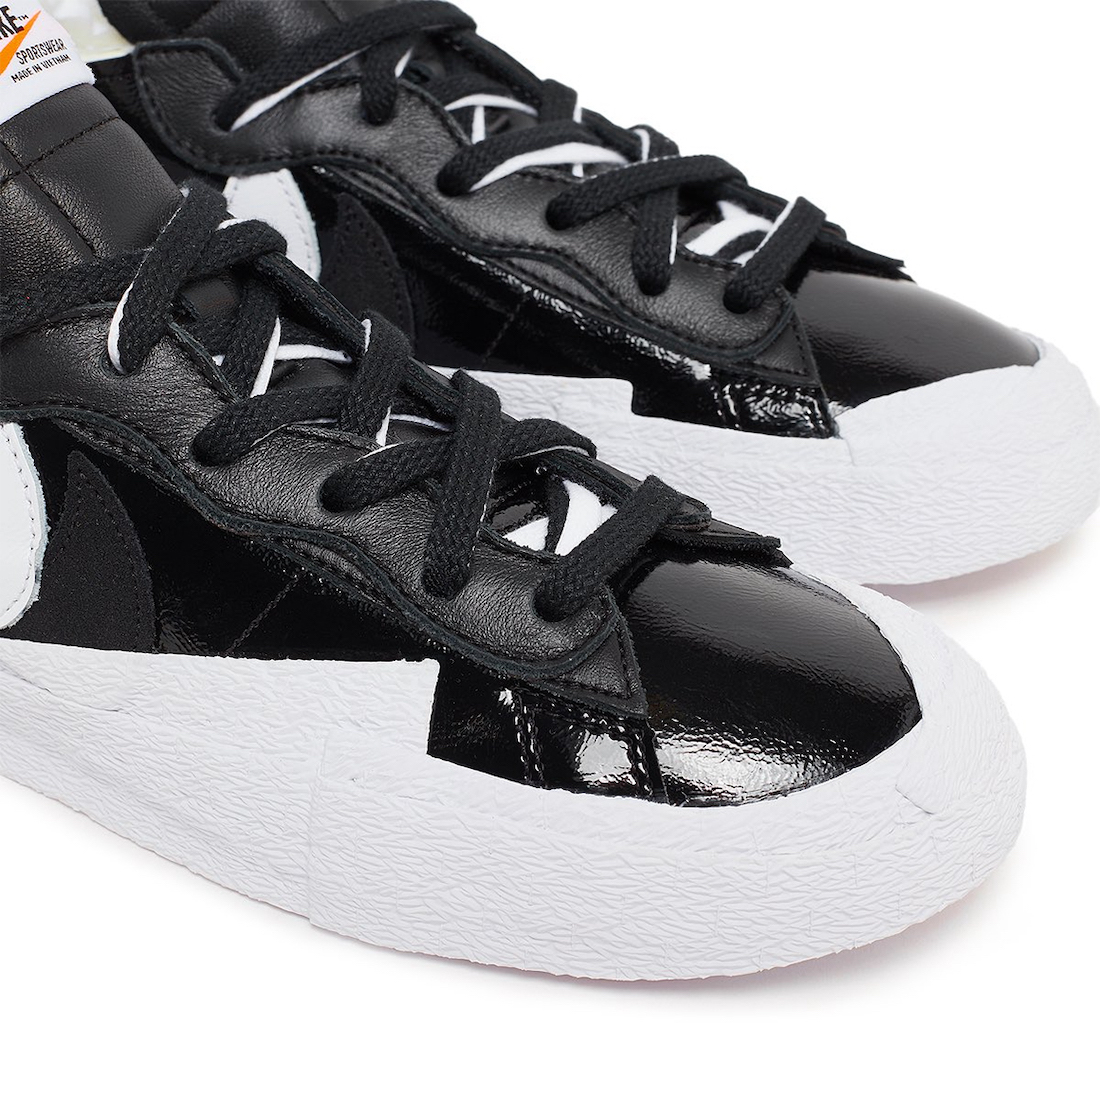 Sacai x Nike Blazer Low Black White Release Date Info